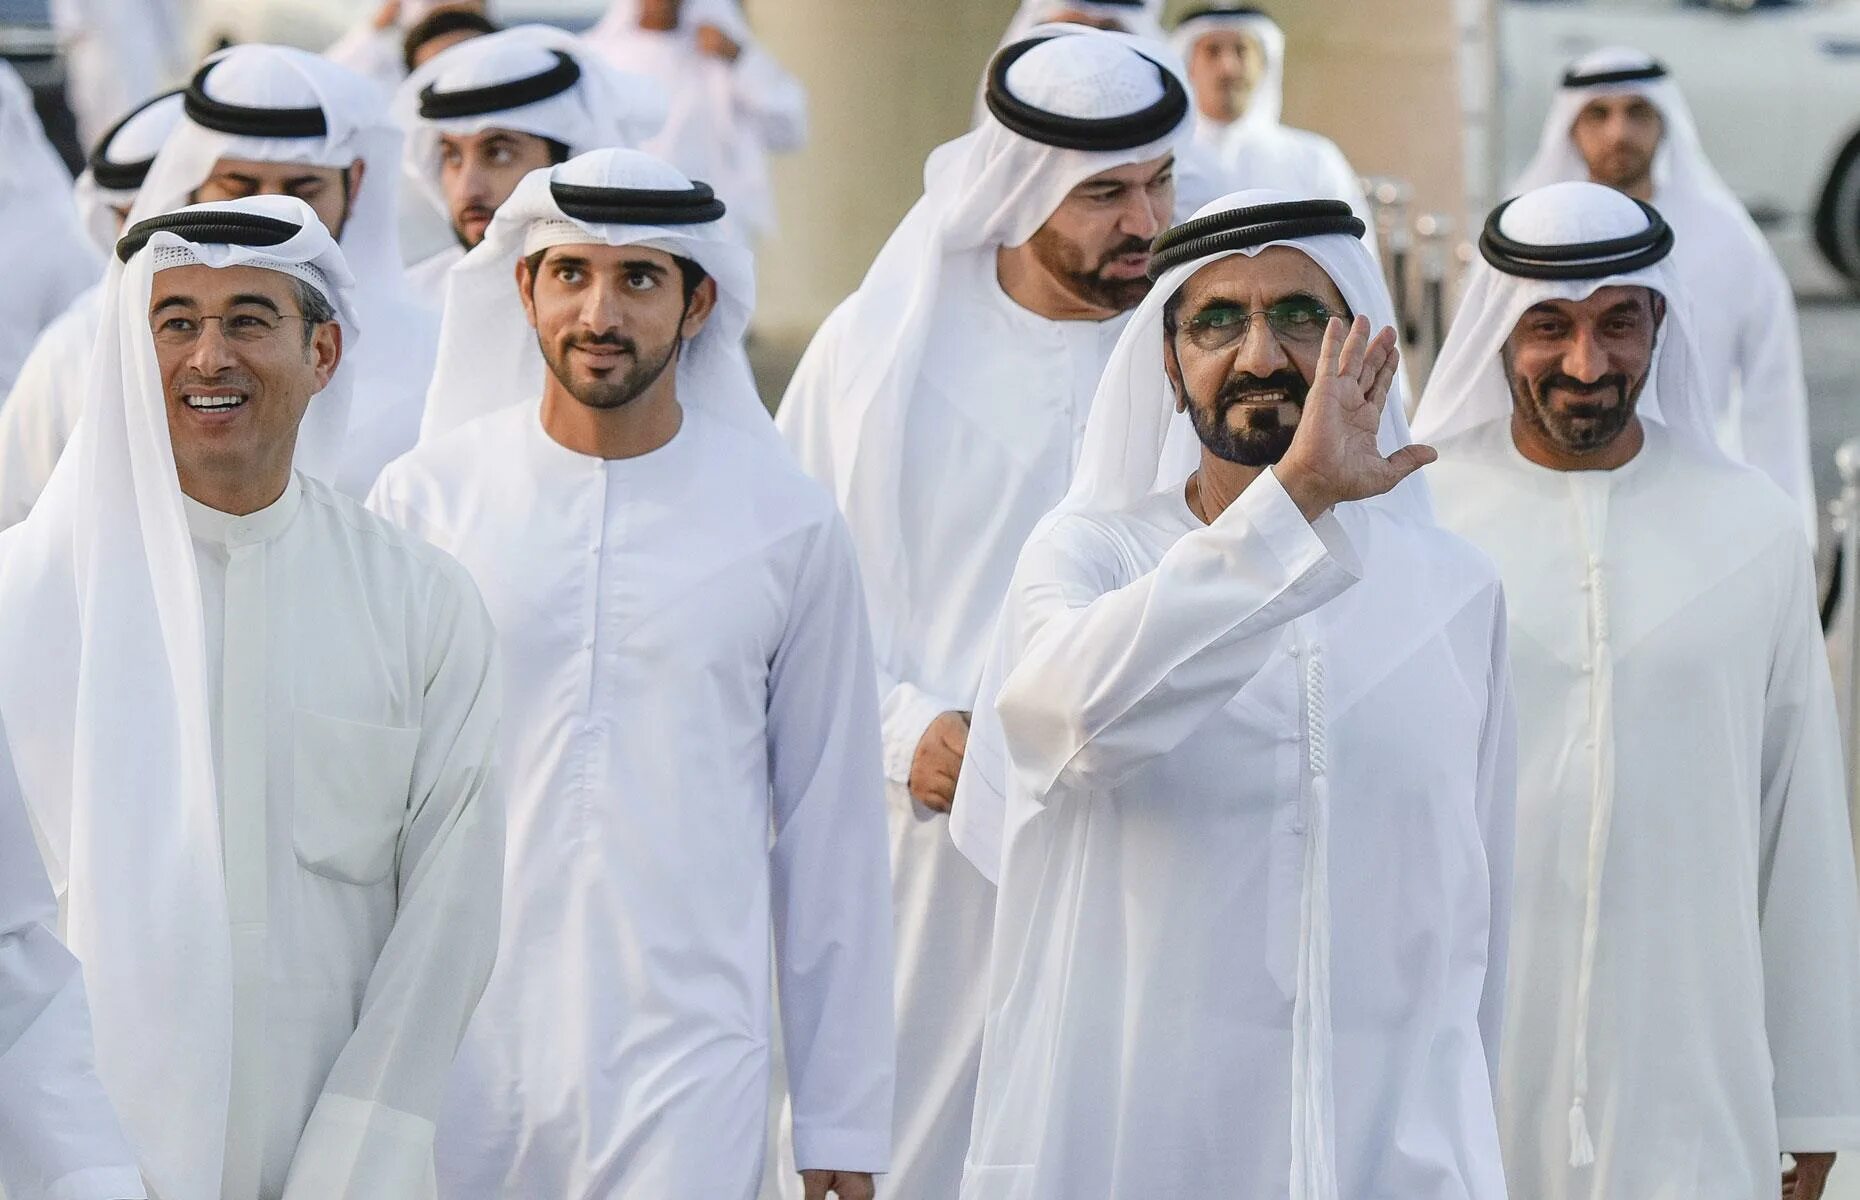 Дубайский шейх. Мактум Бин Мохаммед Аль Мактум. Шейх Мухаммед Дубай. Принц Саудовской Аравии Хамдан.